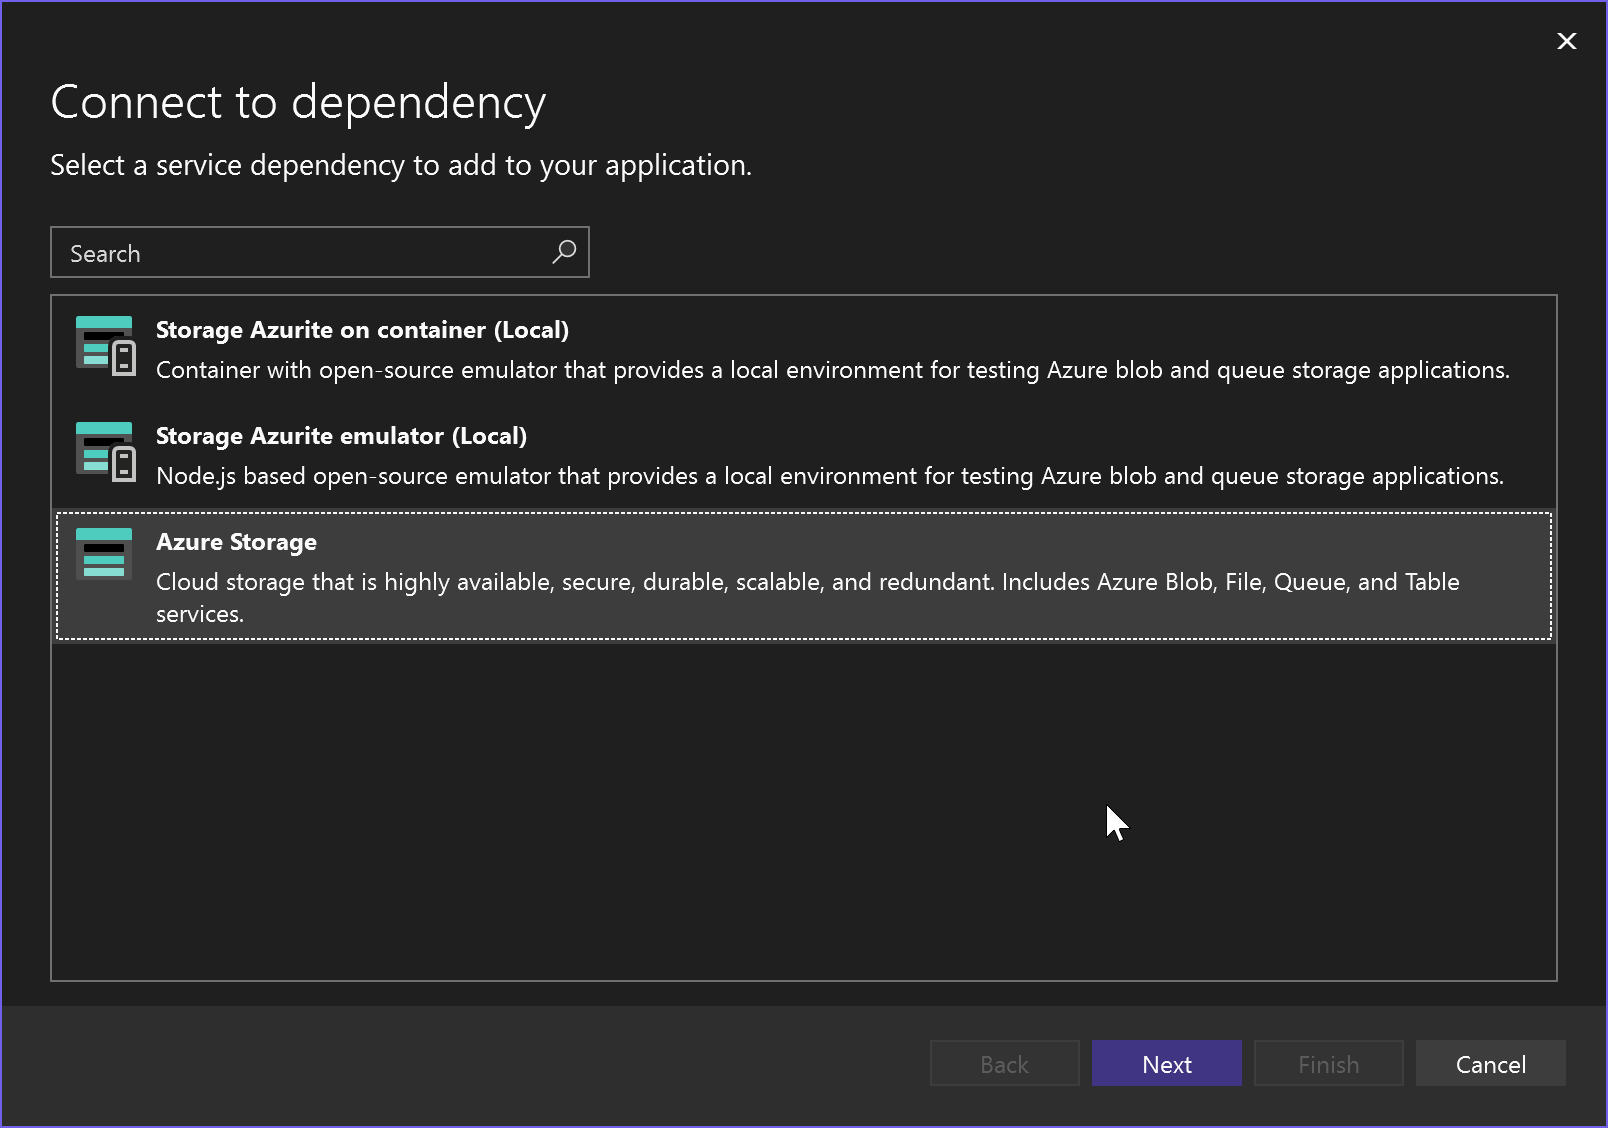 Captura de pantalla que muestra la conexión a la dependencia: Azure Storage.